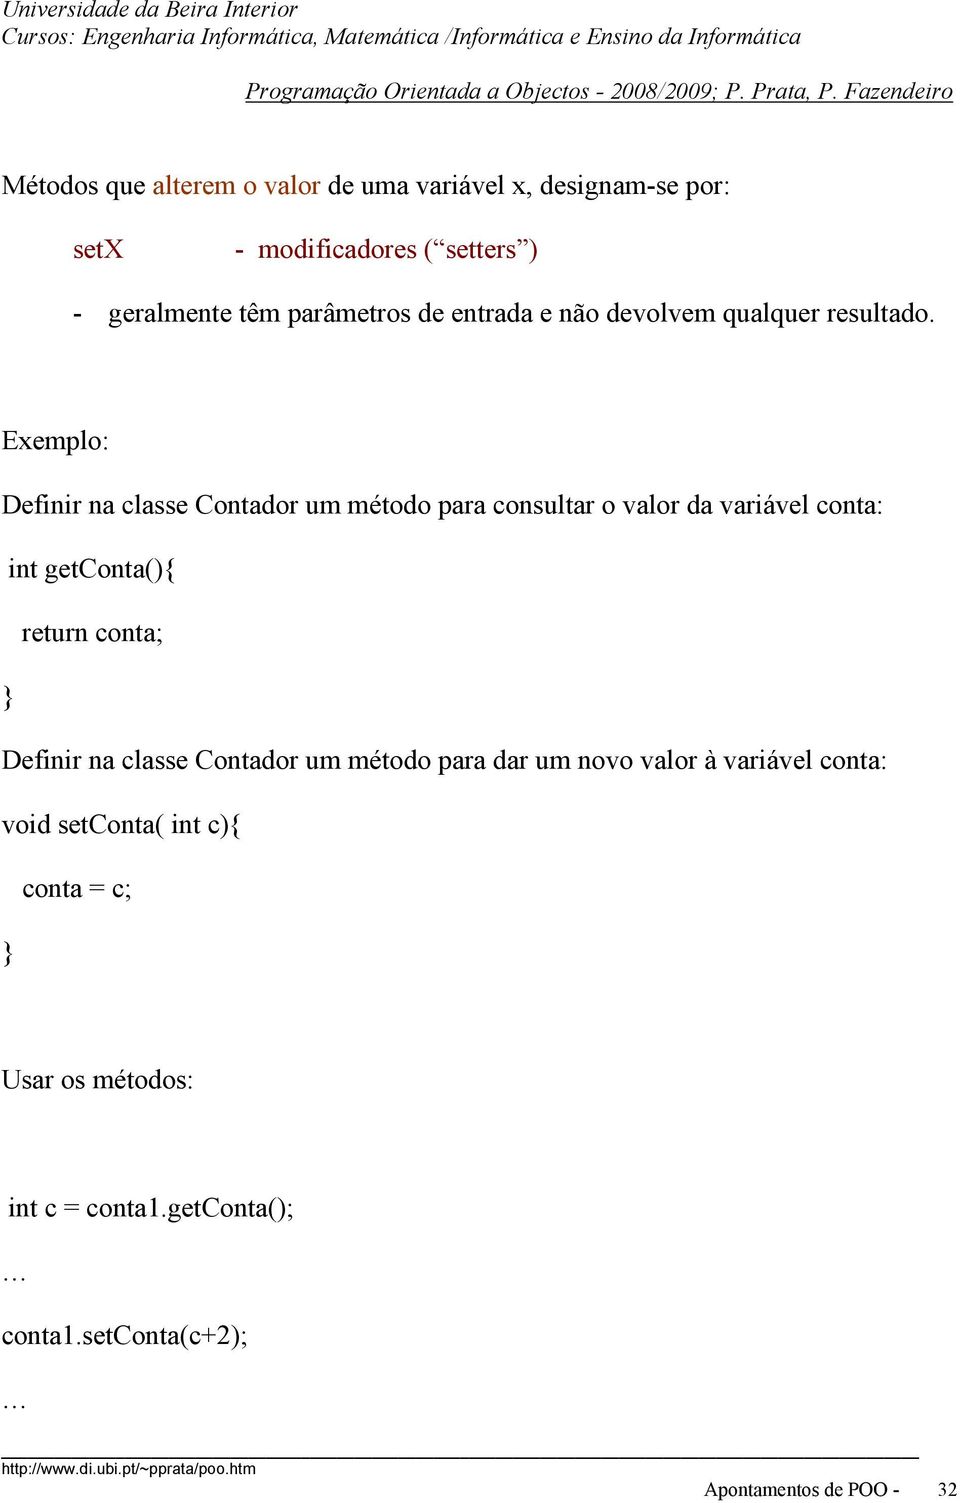 Exemplo: Definir na classe Contador um método para consultar o valor da variável conta: int getconta(){ return conta;